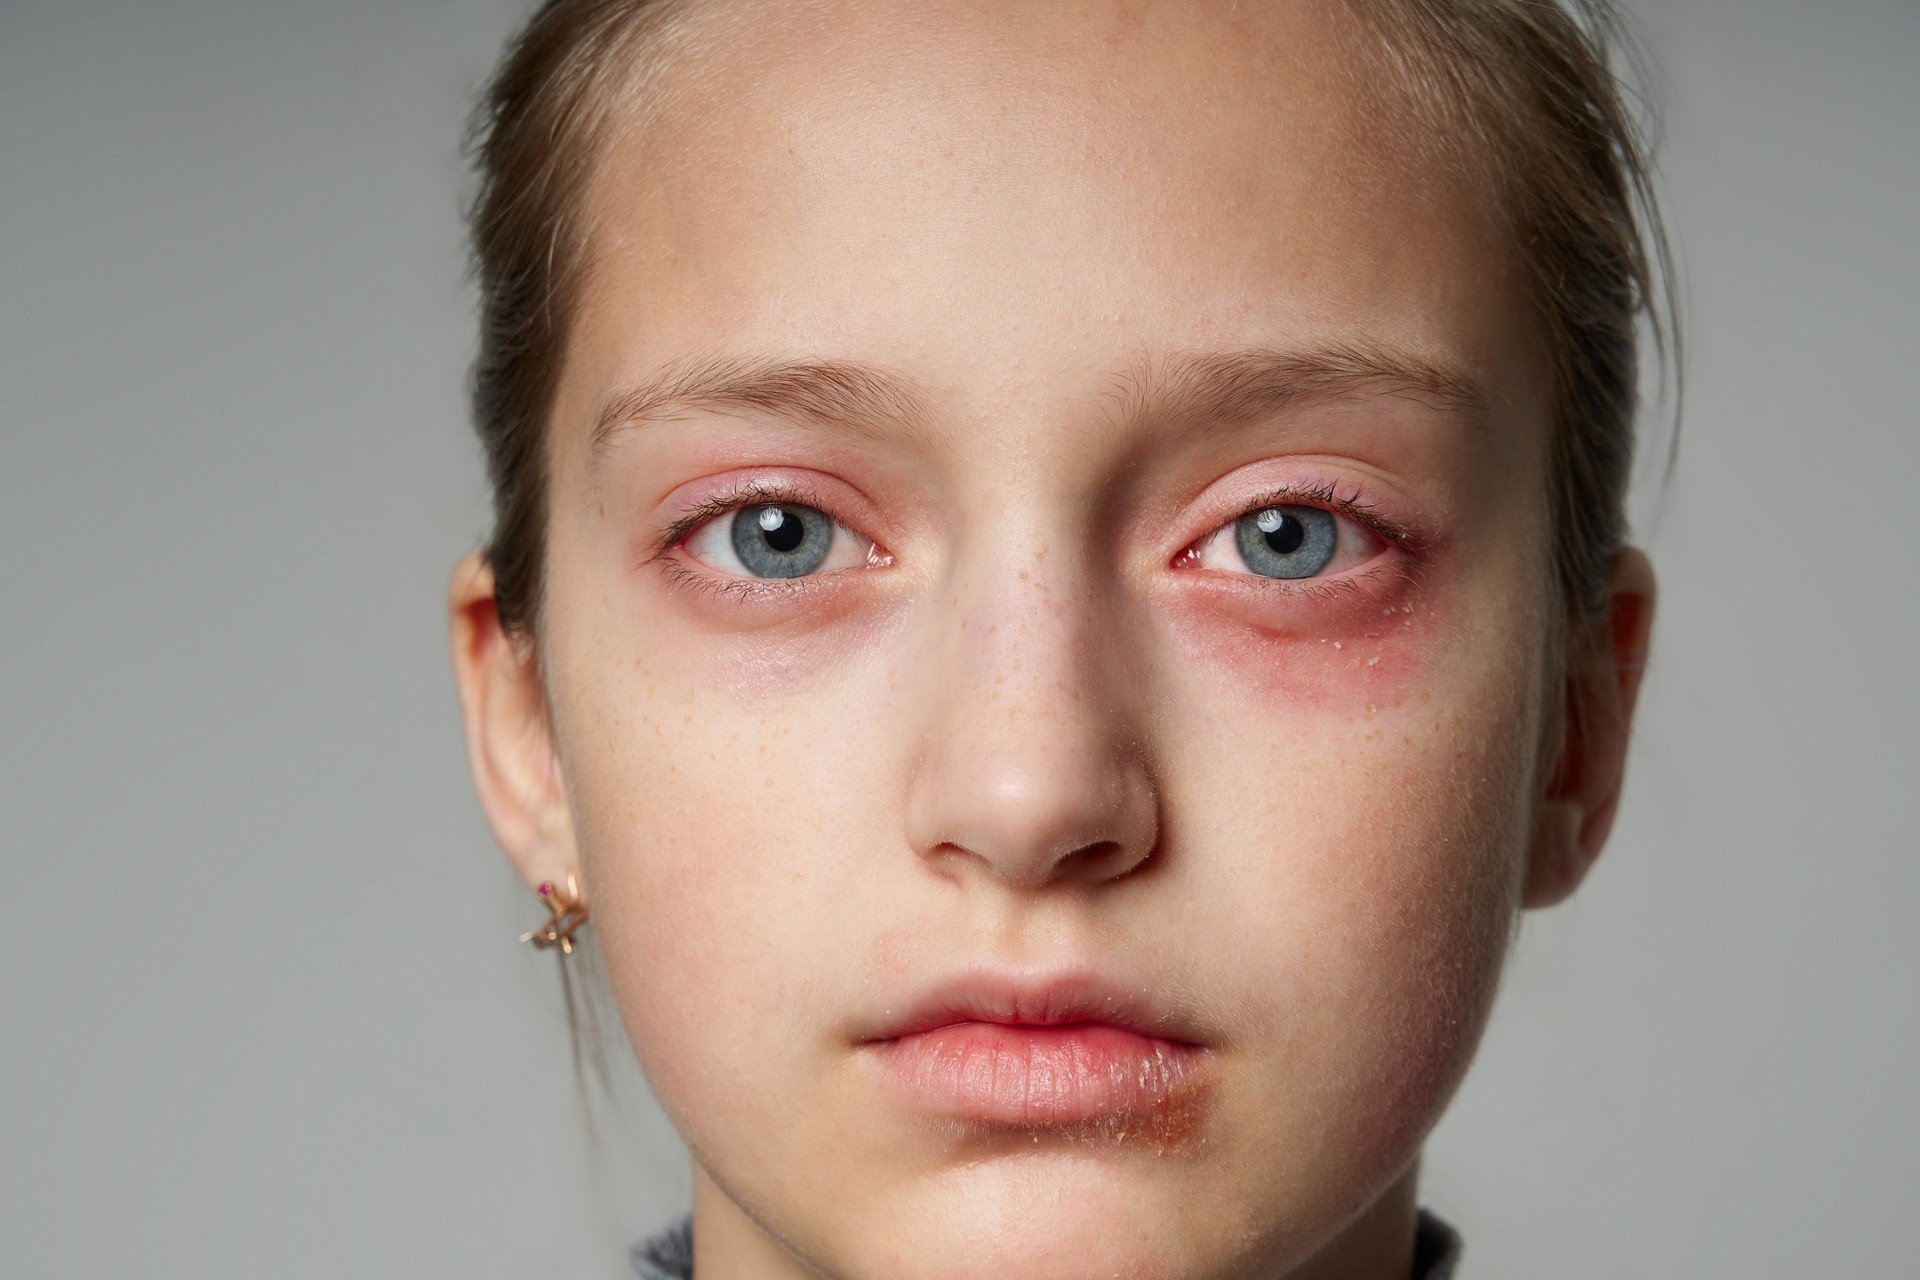 Czym złagodzić uczulenie na twarzy? Od czego powstaje alergiczna wysypka na  twarzy u dzieci i dorosłych? Co oznacza wysypka jak kaszka? | Strona Zdrowia